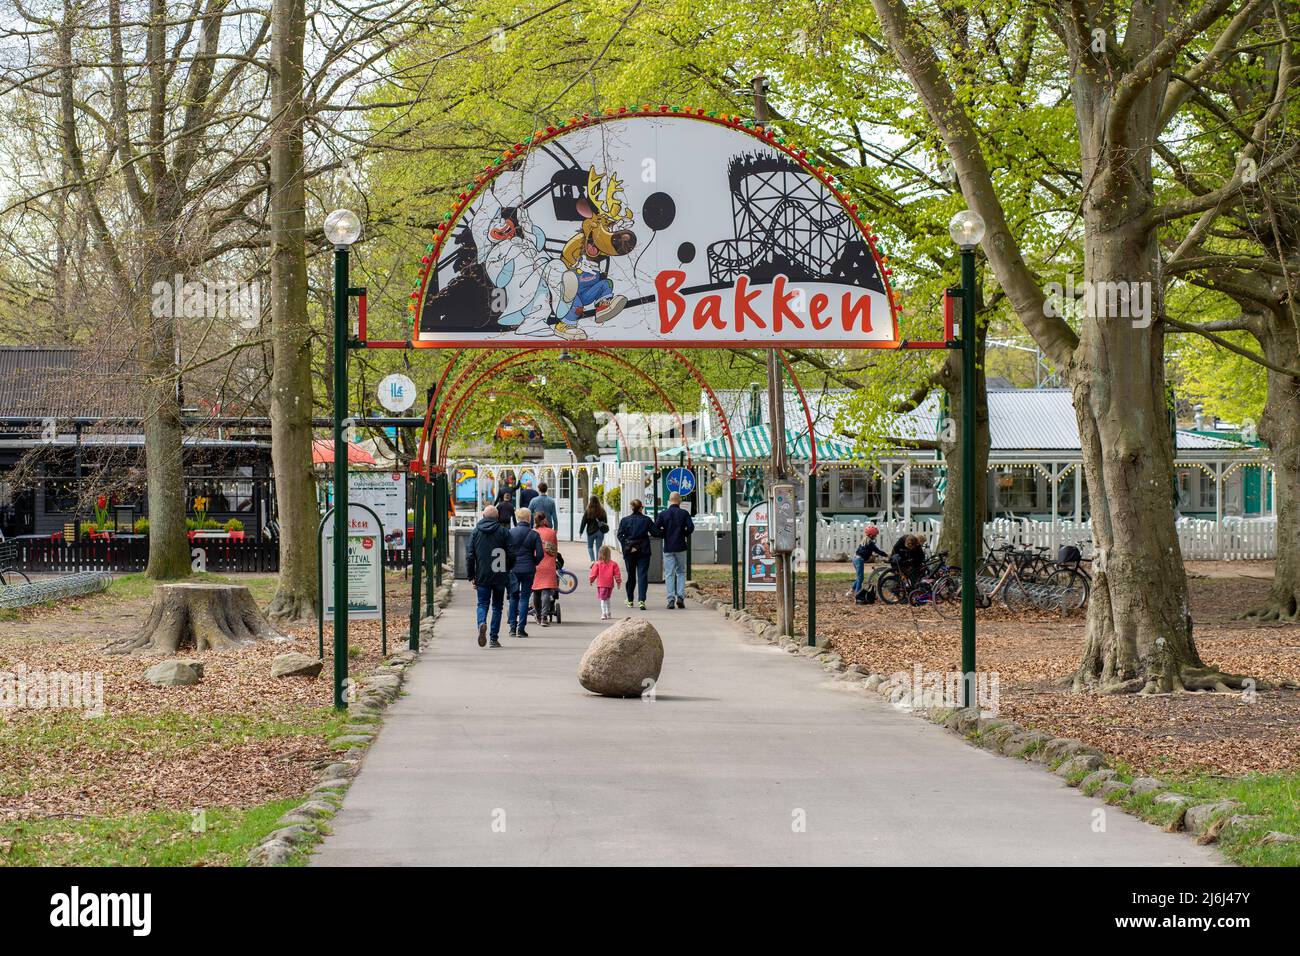 Le parc d'Attractions Bakken à Copenhague, Danemark Banque D'Images